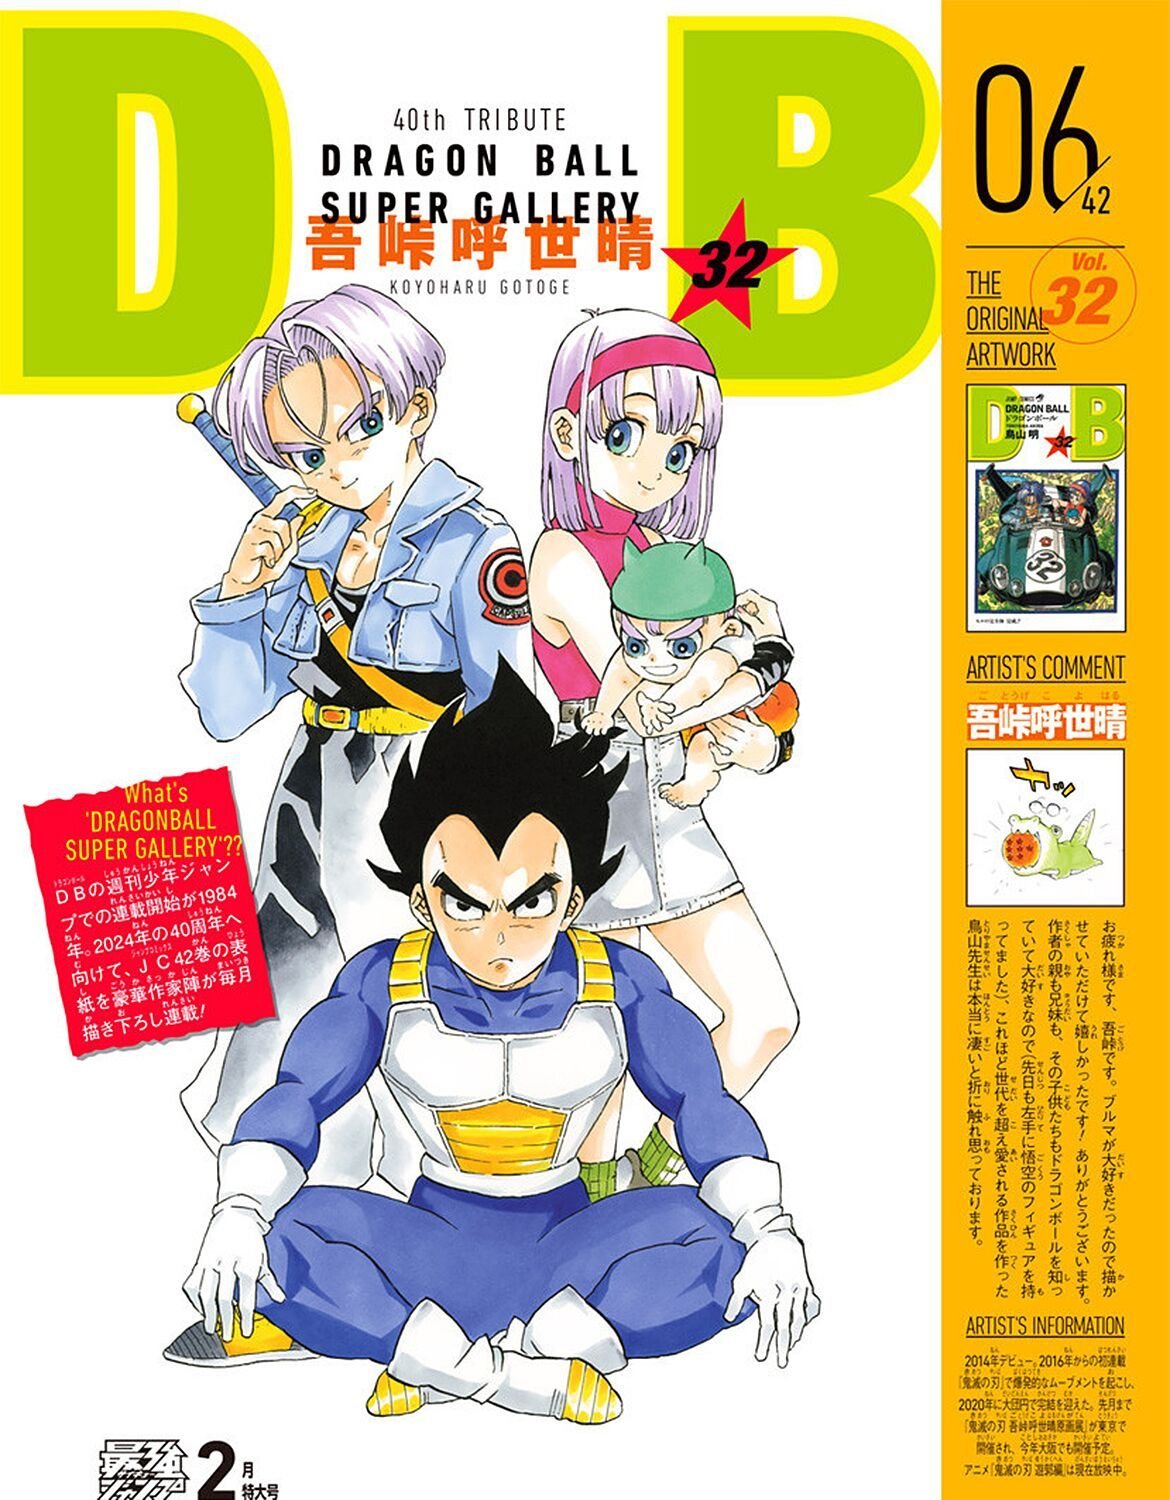 Koyoharu Gotouge, de Demon Slayer, reimaginou uma das capas de Dragon Ball